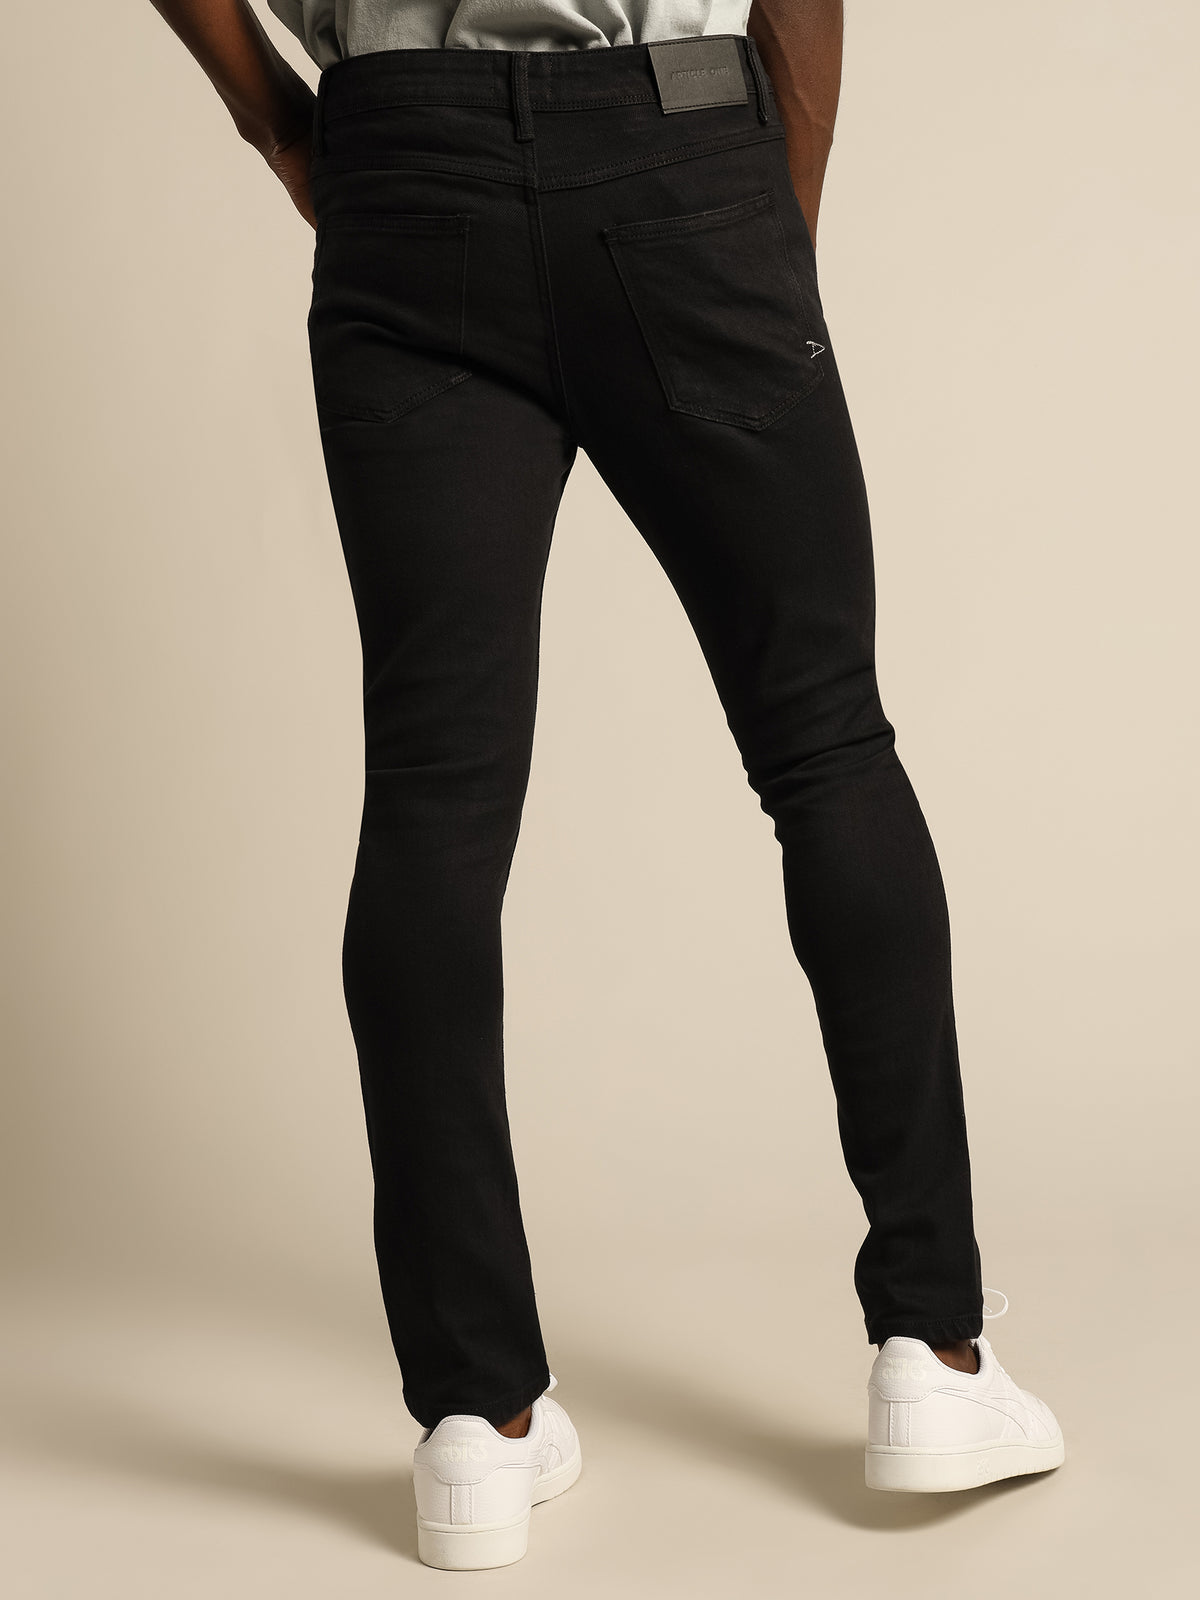 Zane Skinny Jeans in Black